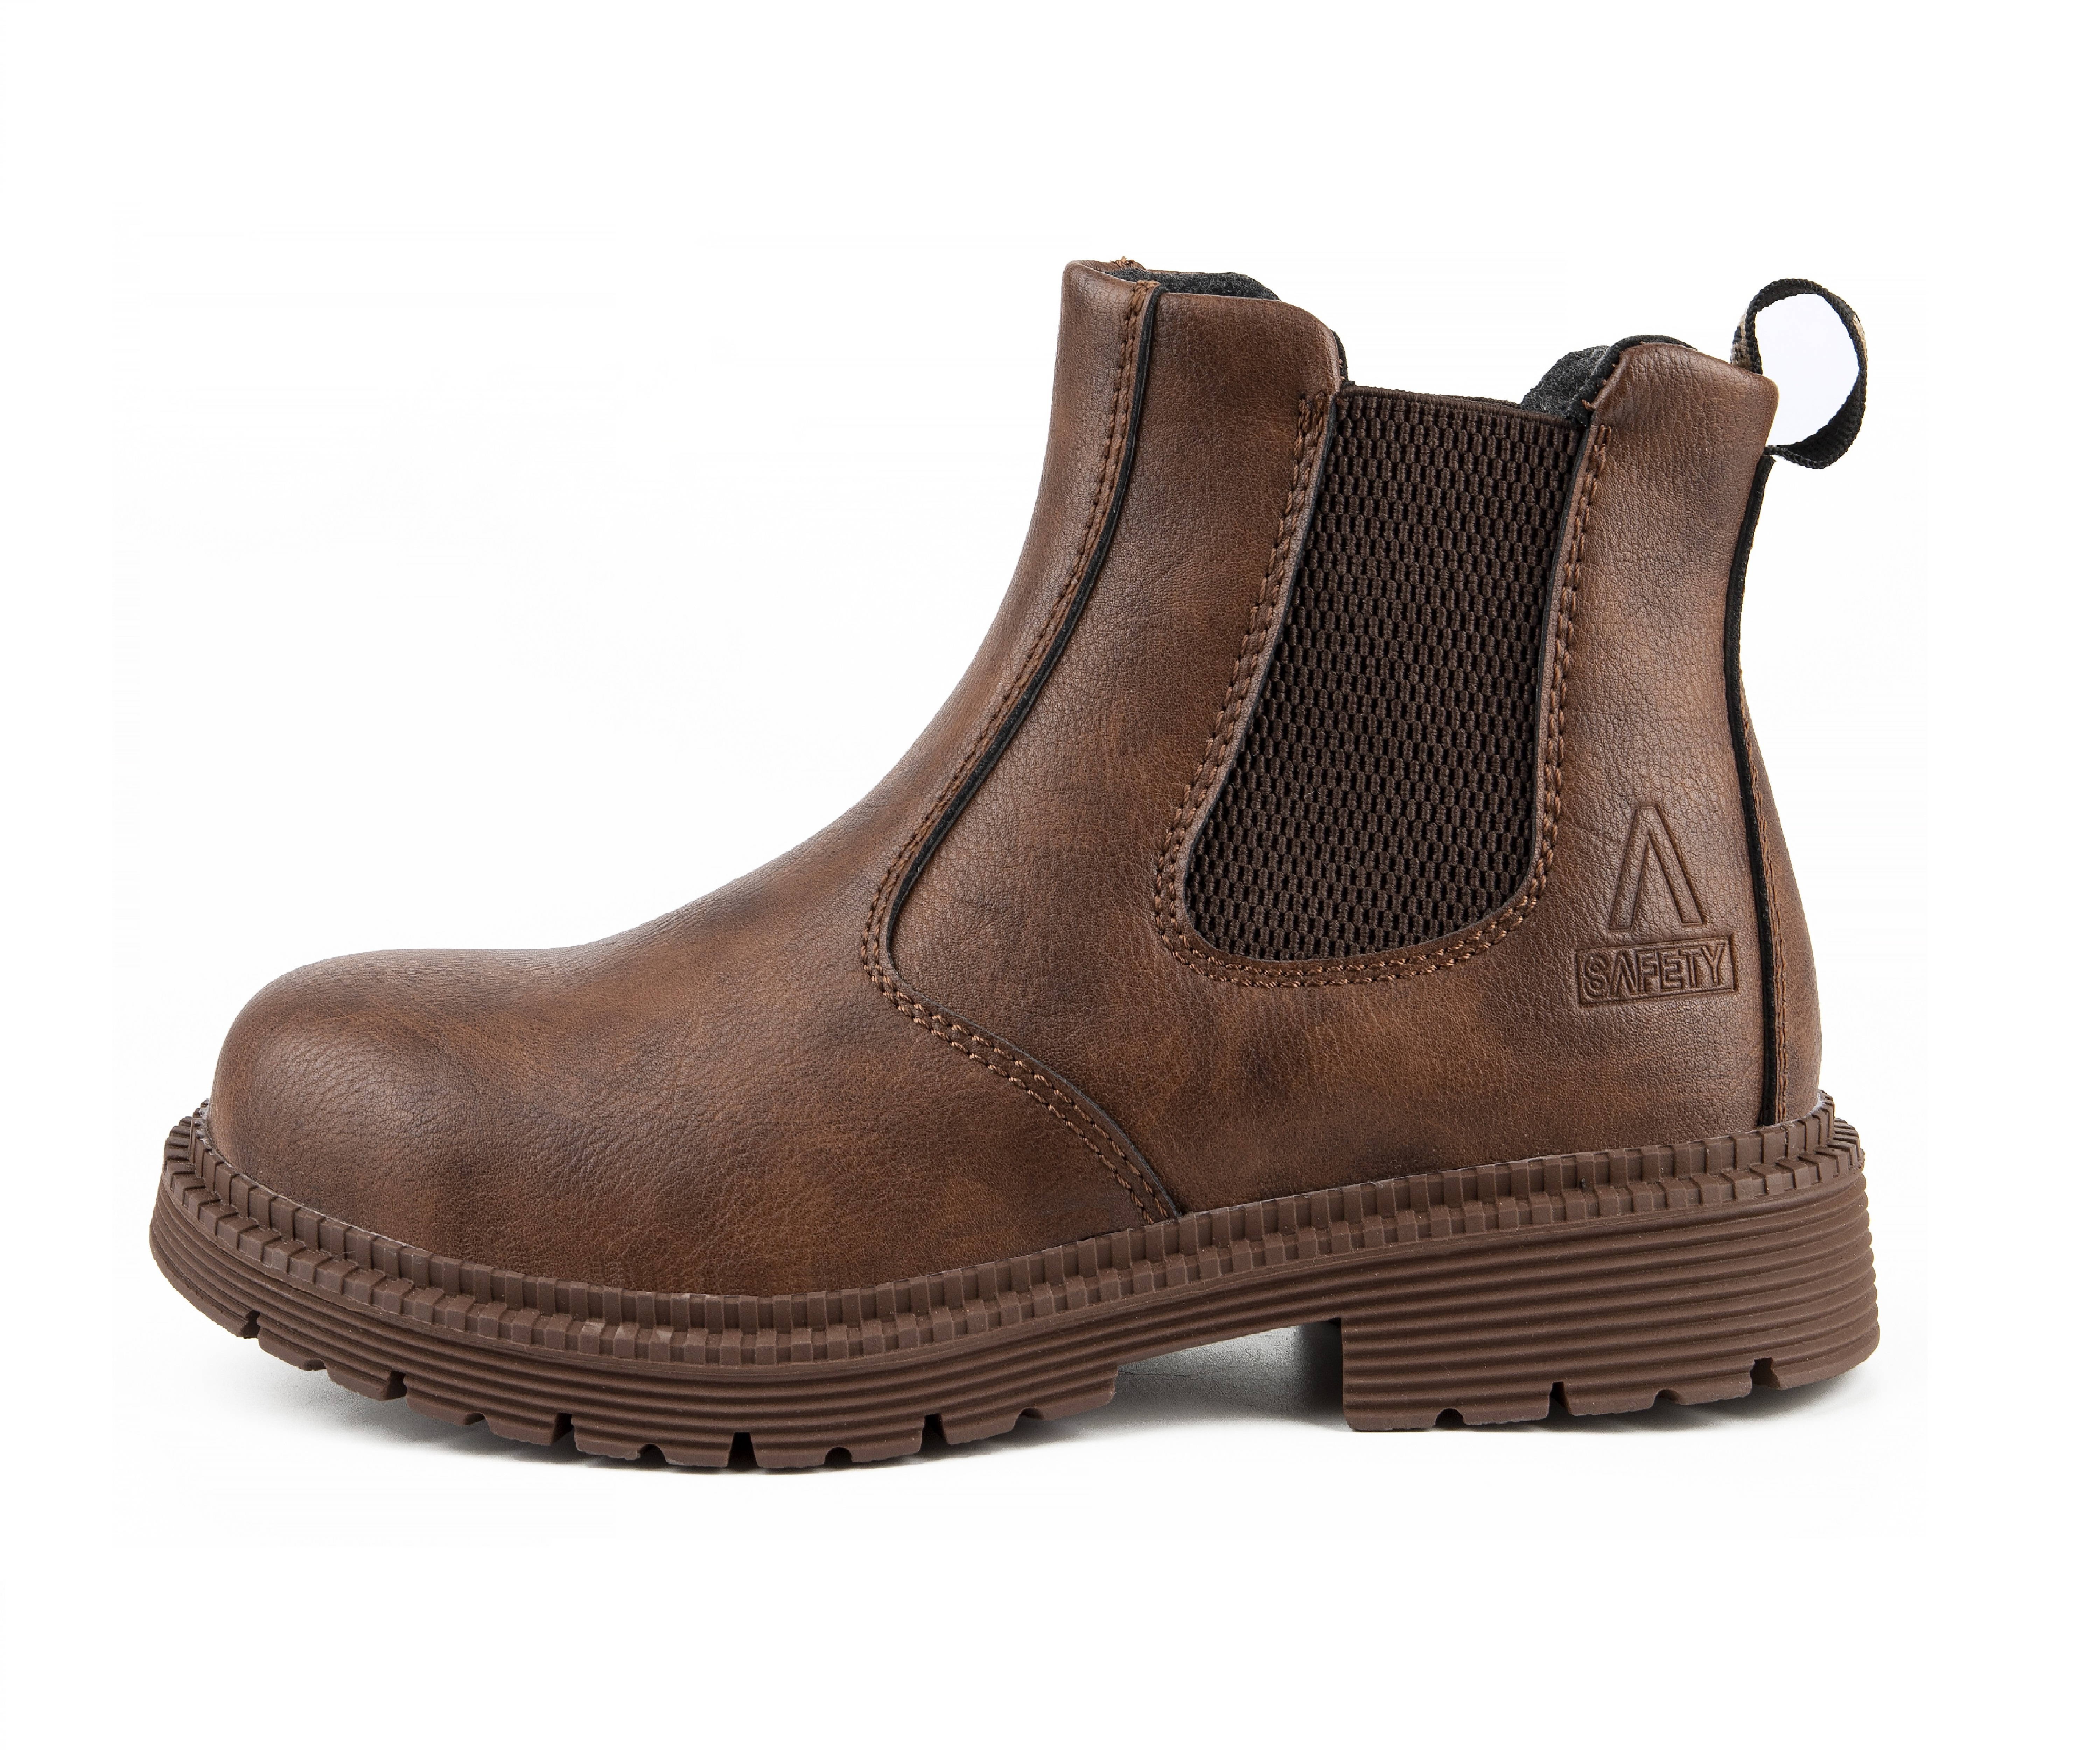 Men's Steel Toe Safety Boots - Model 815 SafeAlex.com